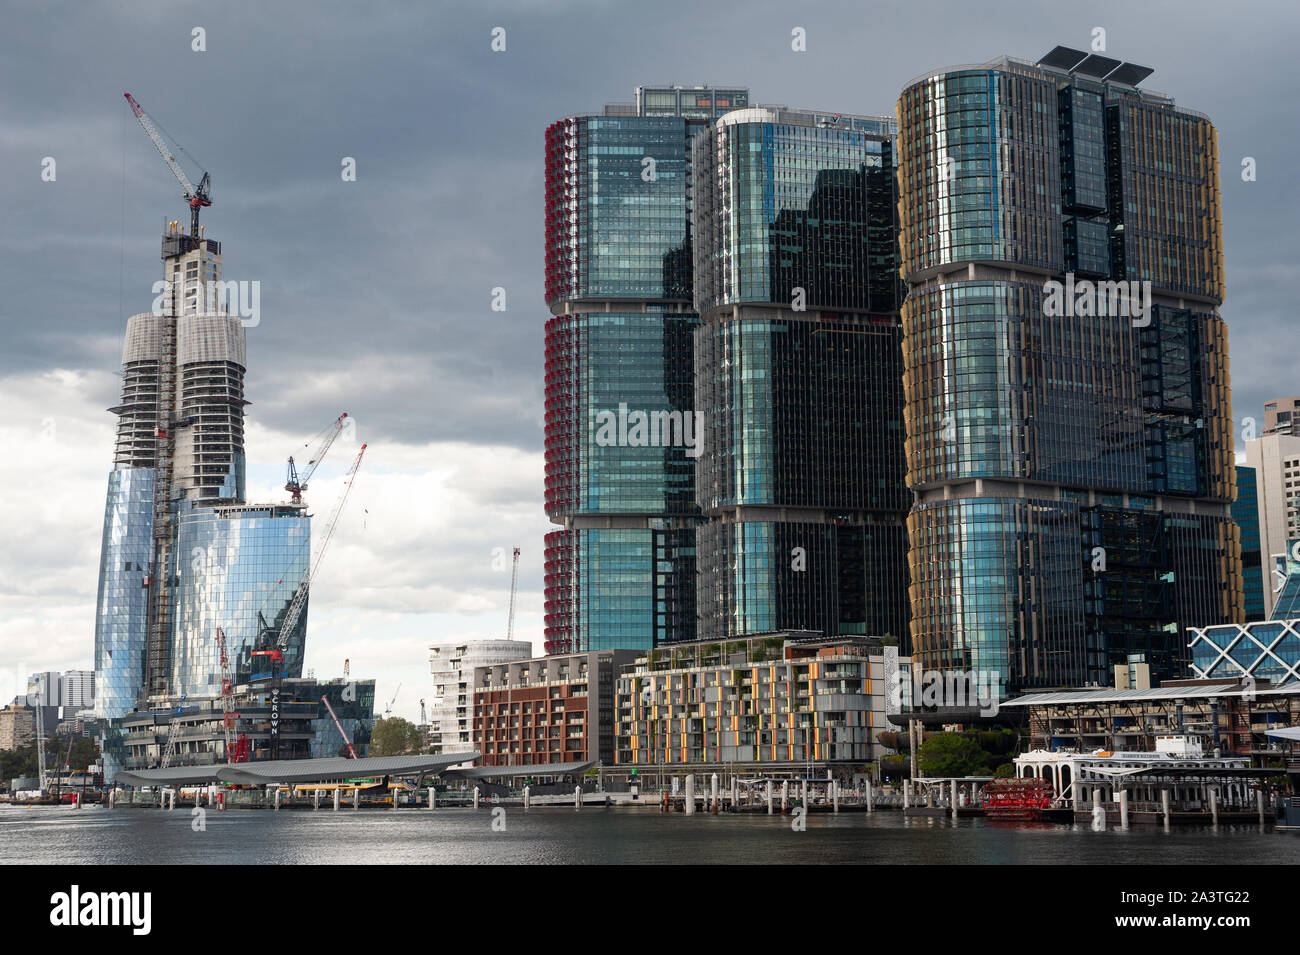 23.09.2019, Sydney, Nuovo Galles del Sud, Australia - nuovi grattacieli con la corona di Sydney progetto ancora in fase di costruzione e internazionale delle torri. Foto Stock